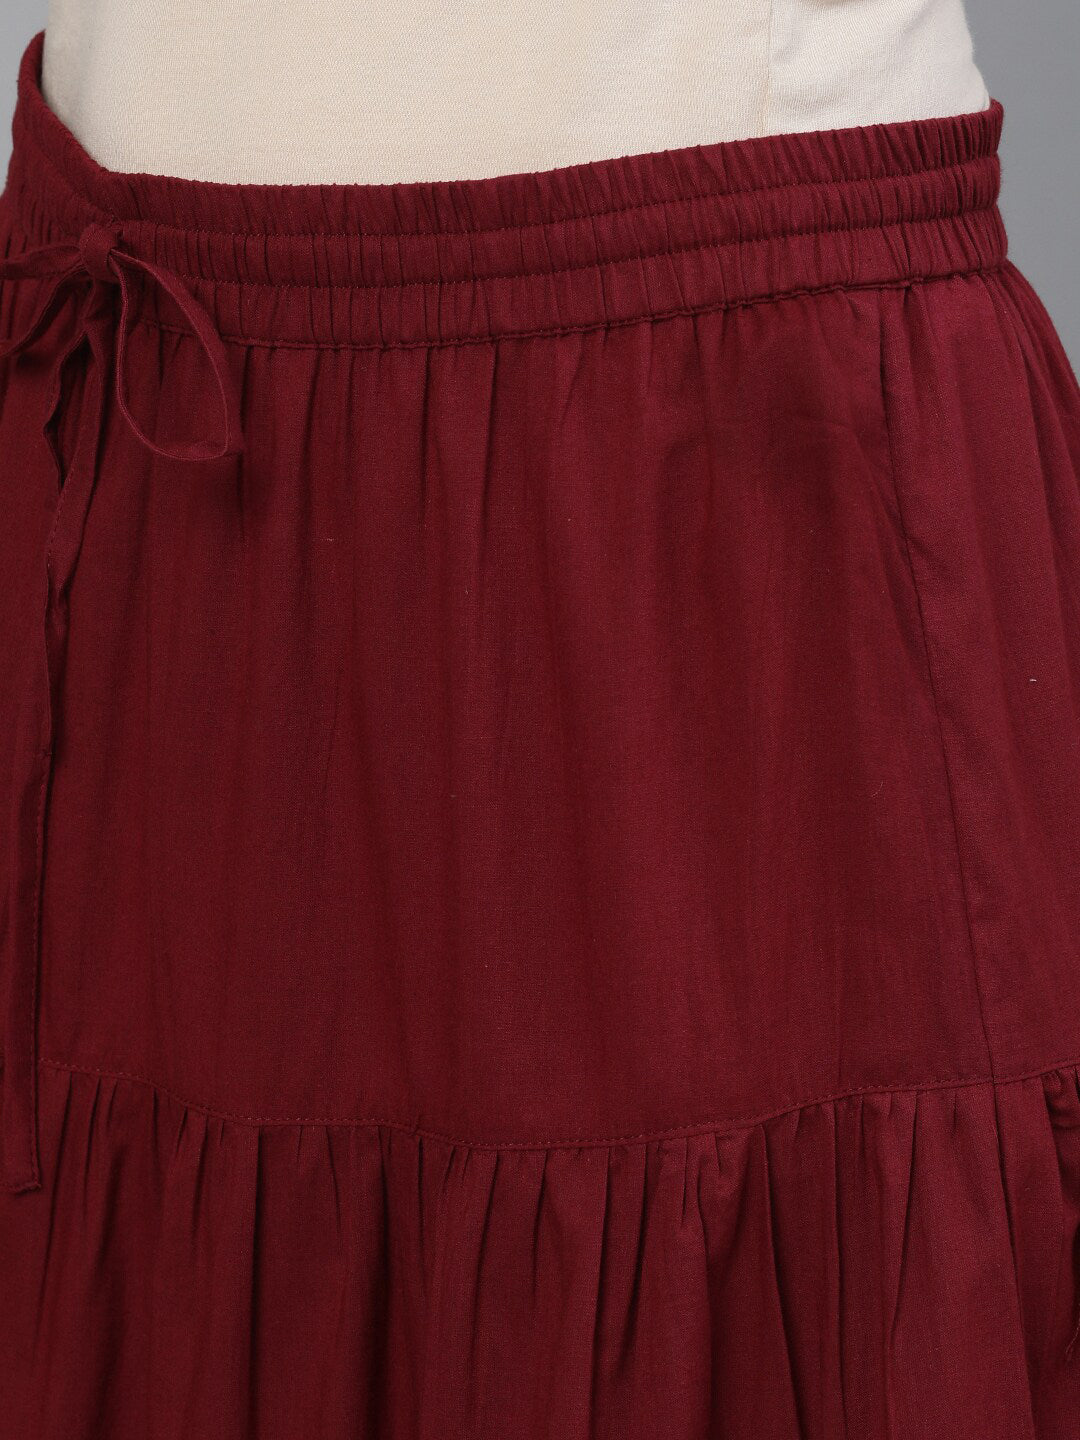 Ishin Women Maroon Yoke Embroidered Straight Kurta Skirt Dupatta Set - Distacart